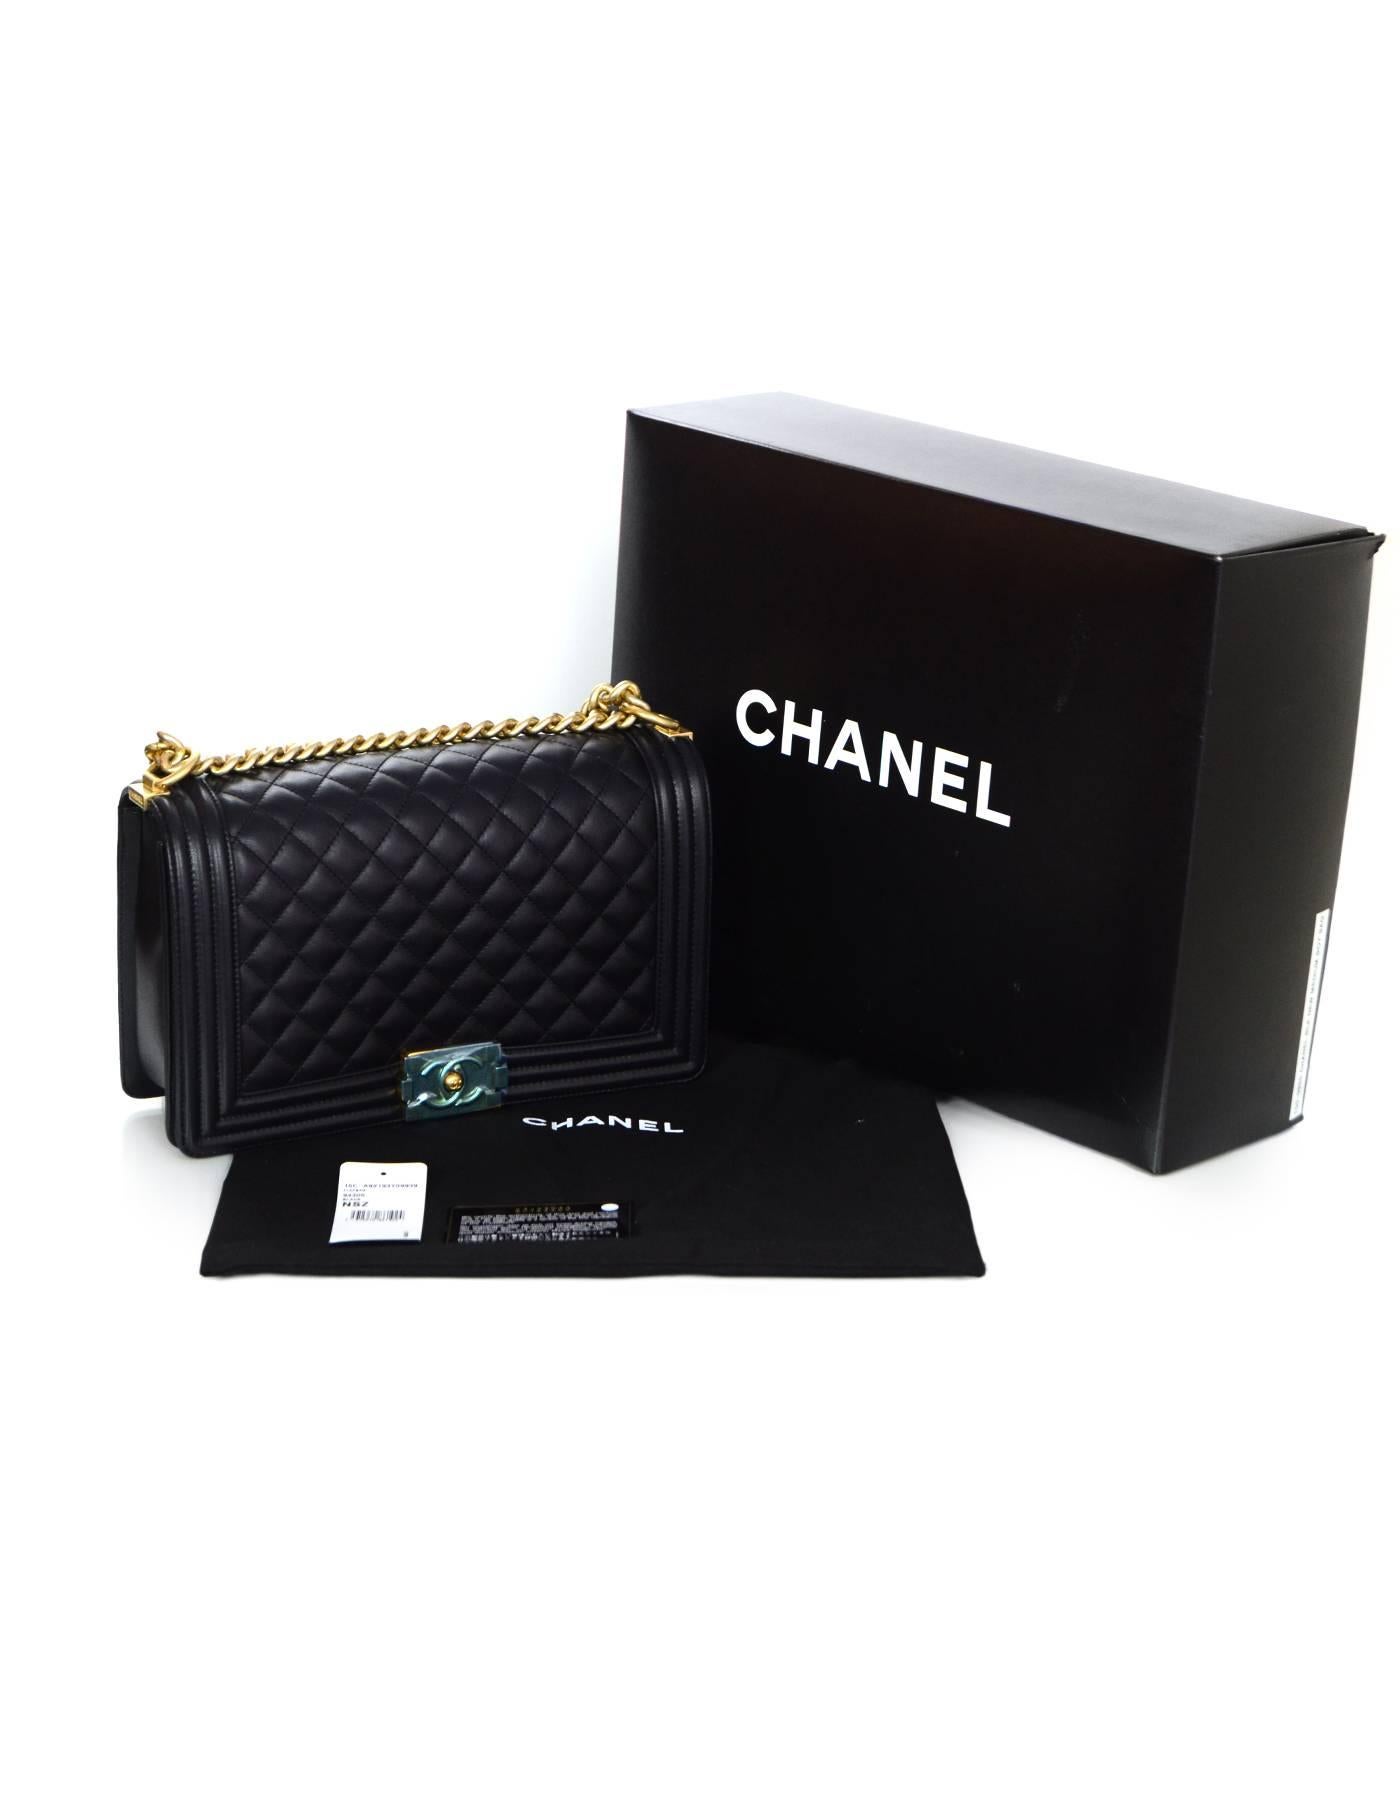 Chanel NEW IN BOX Black Leather New Medium Boy Bag GHW  4